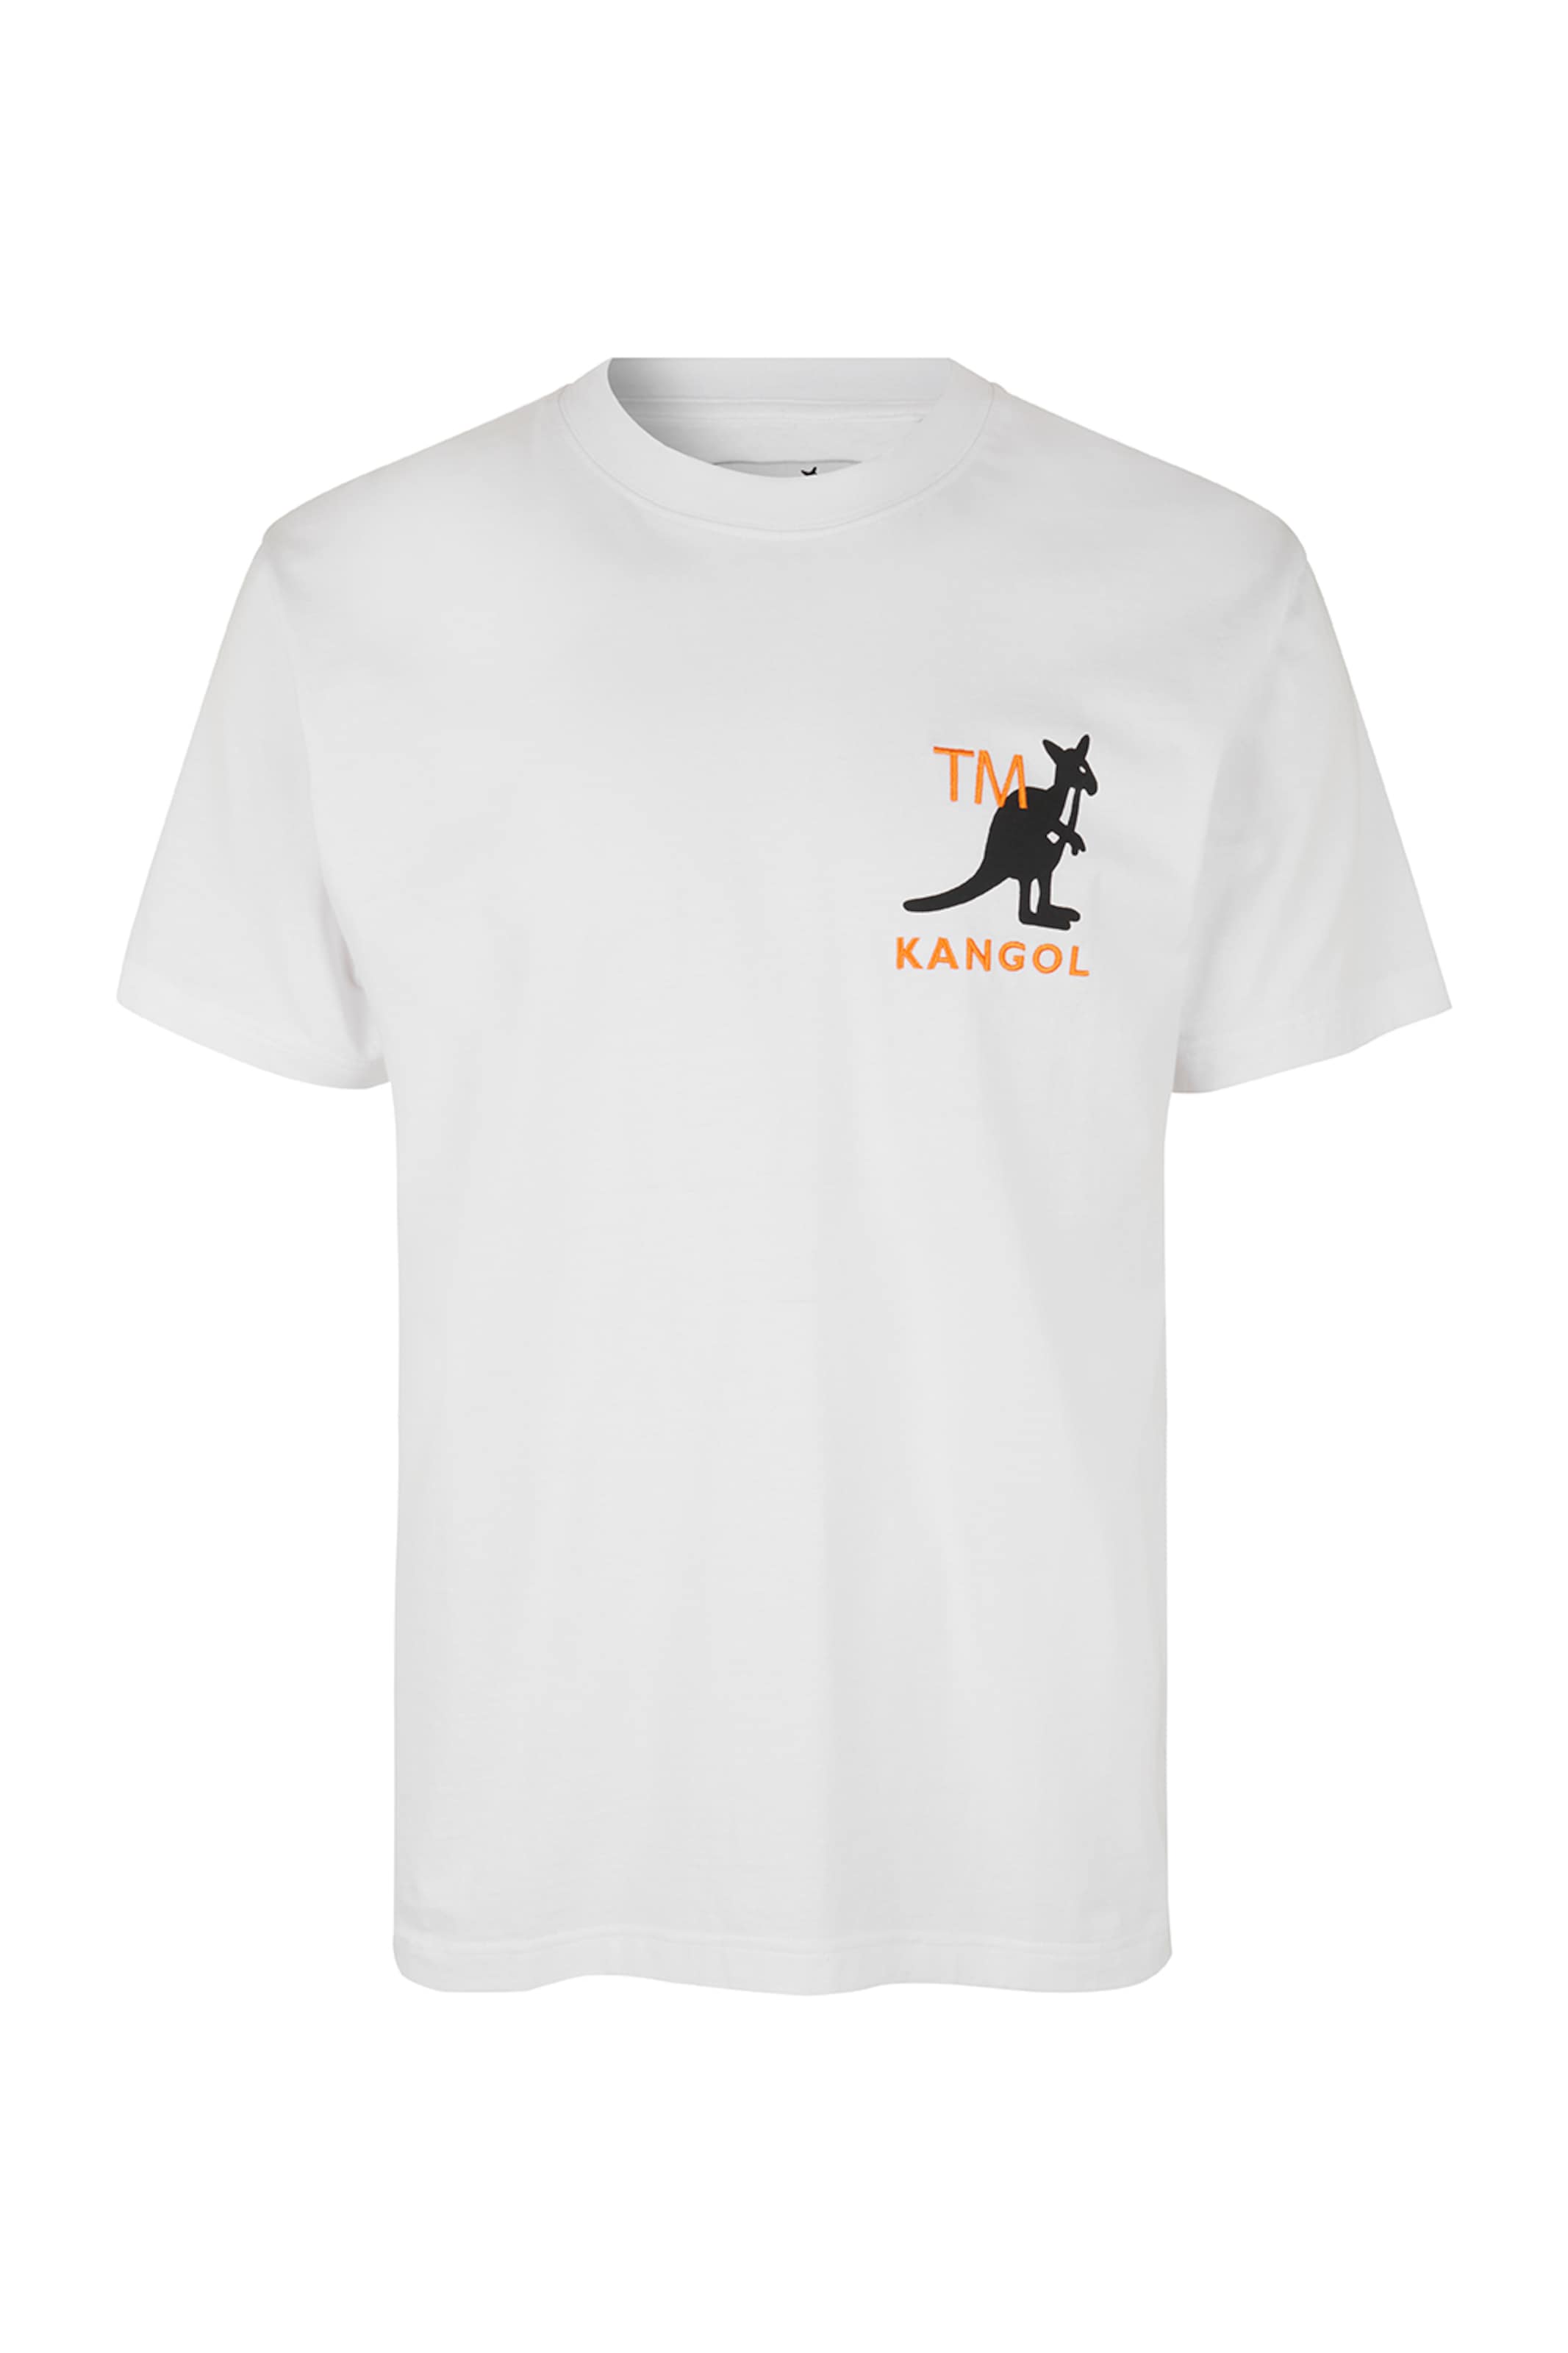 Kangol T-Shirt 'harlem' XS Blanc